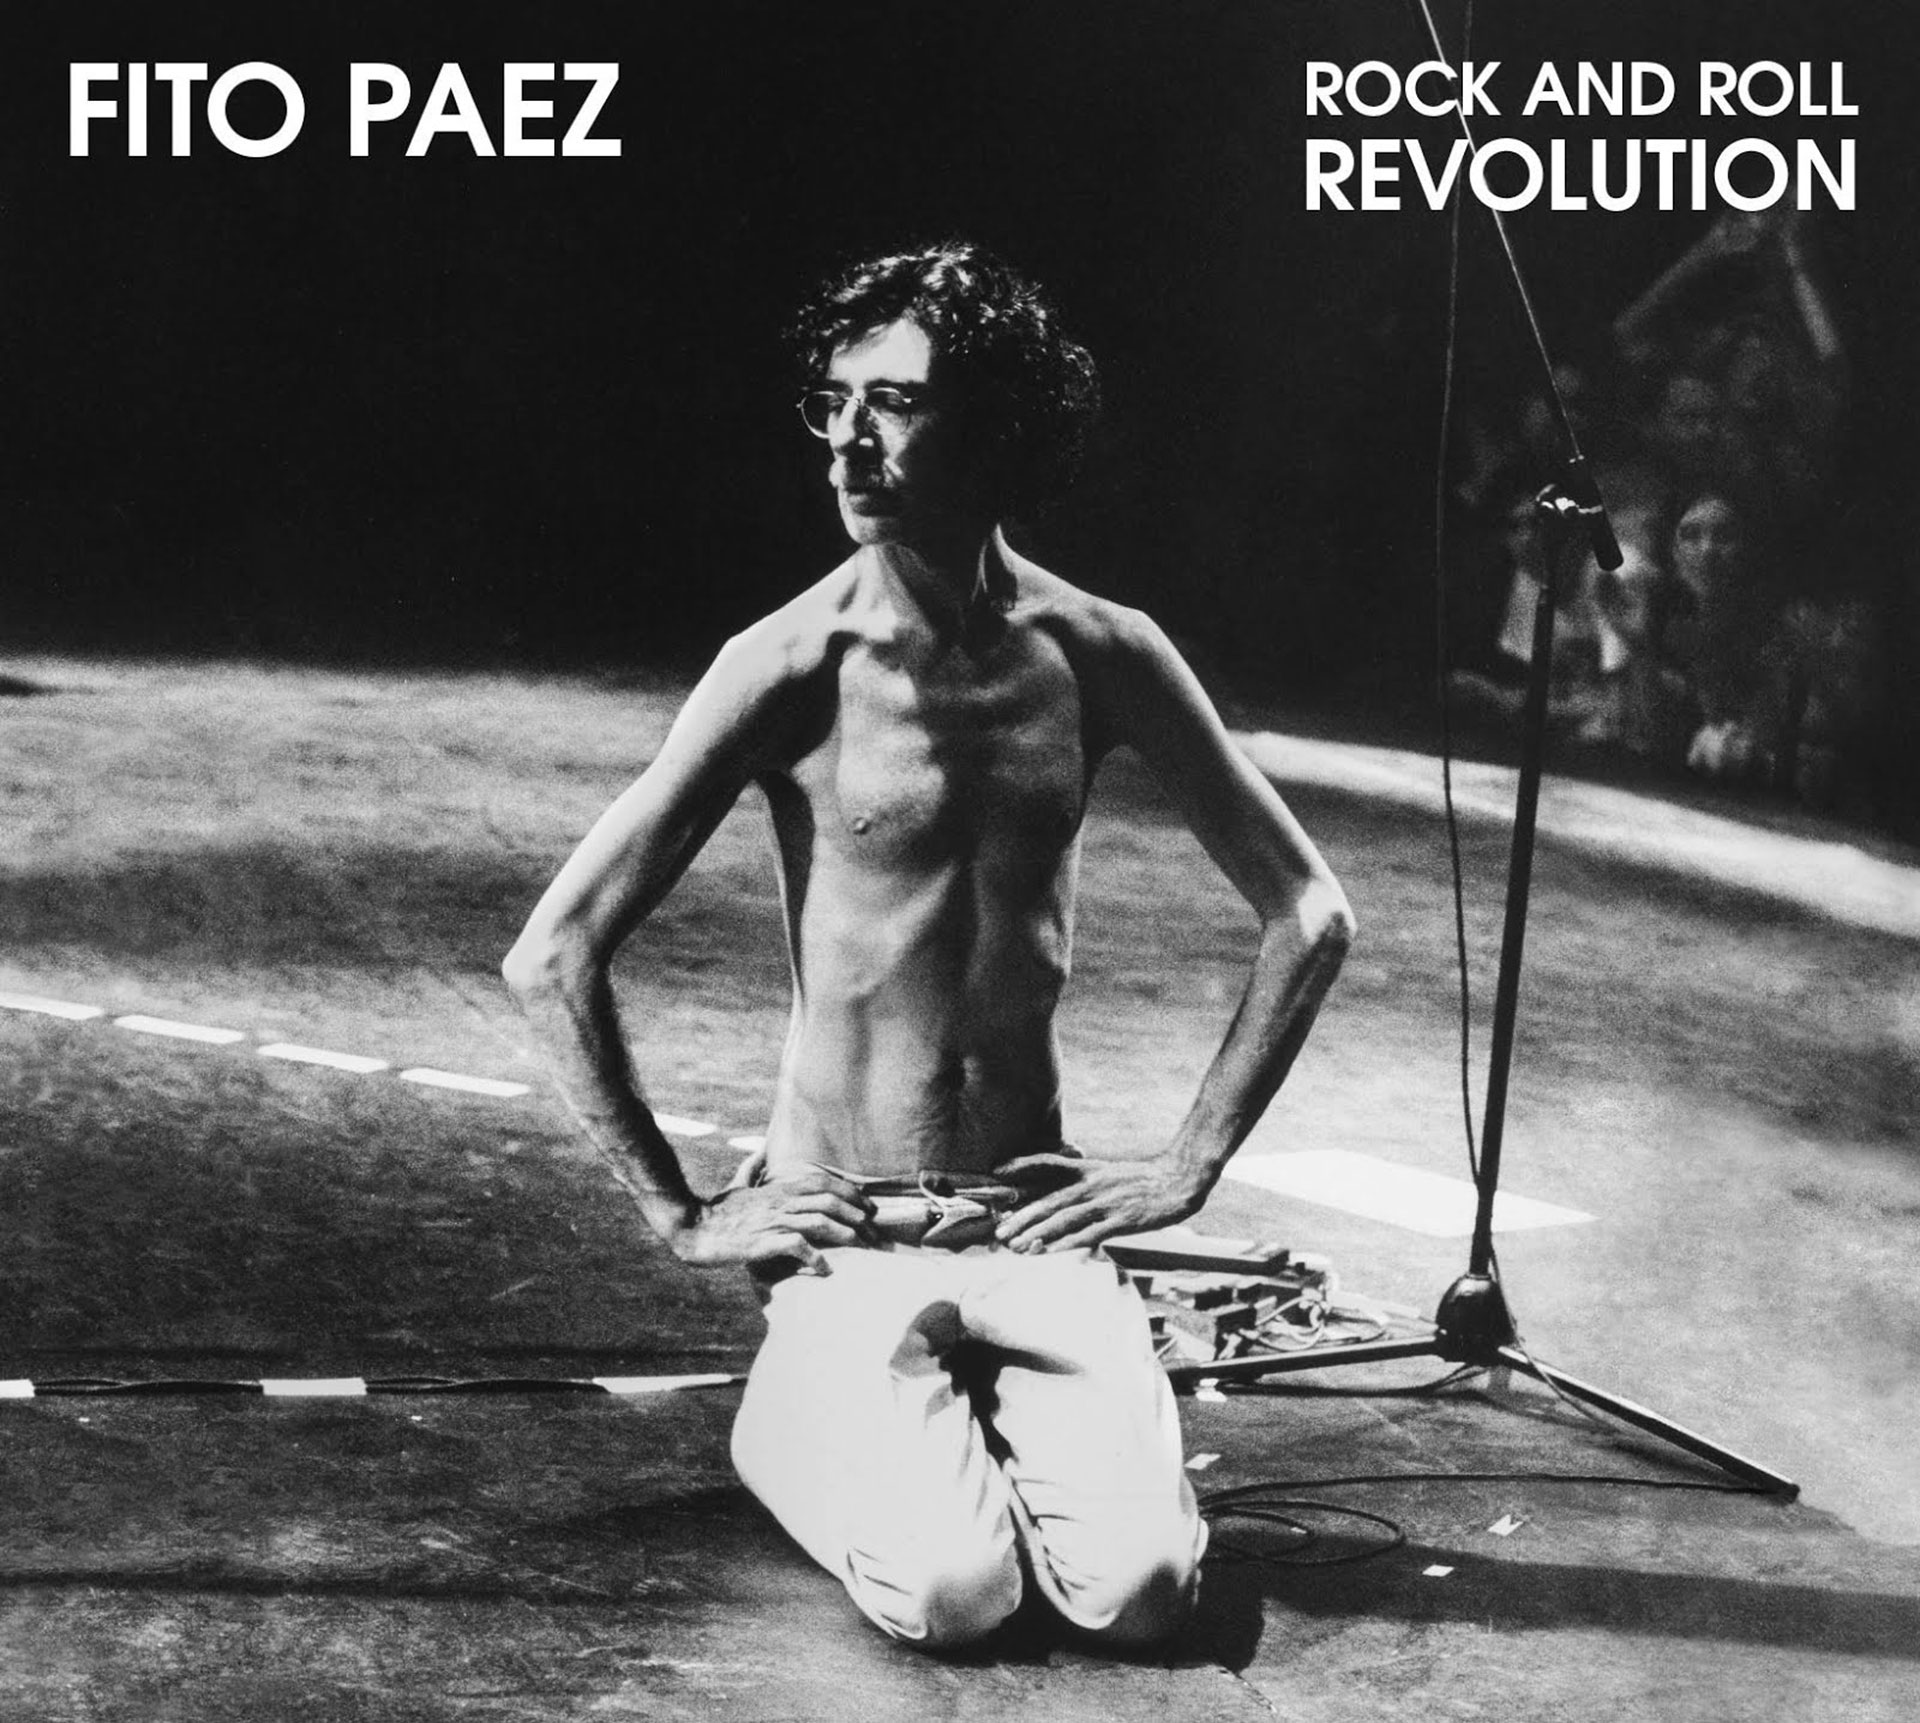 En 2014 Fito Páez editó Rock and Roll Revolution, un disco con canciones originales suyas pero como tributo en tapa puso una foto de Charly García